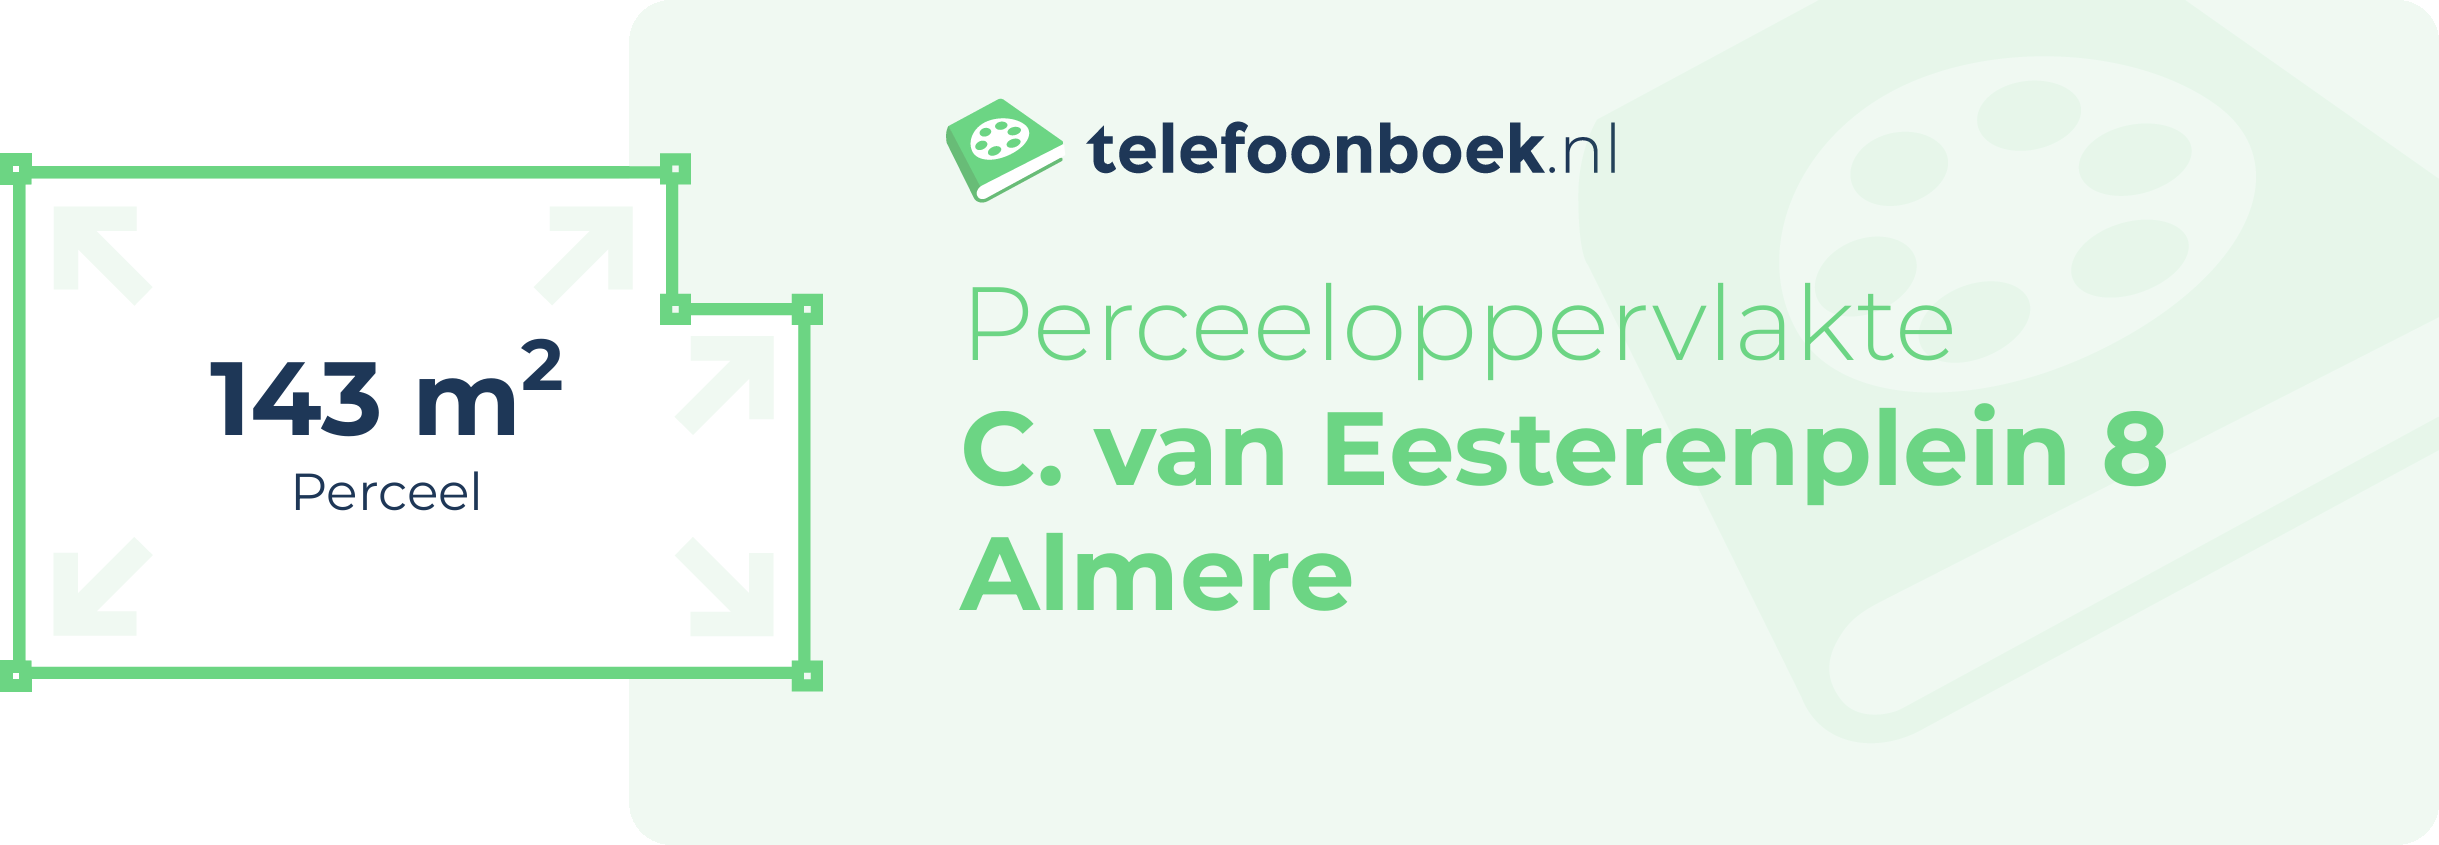 Perceeloppervlakte C. Van Eesterenplein 8 Almere